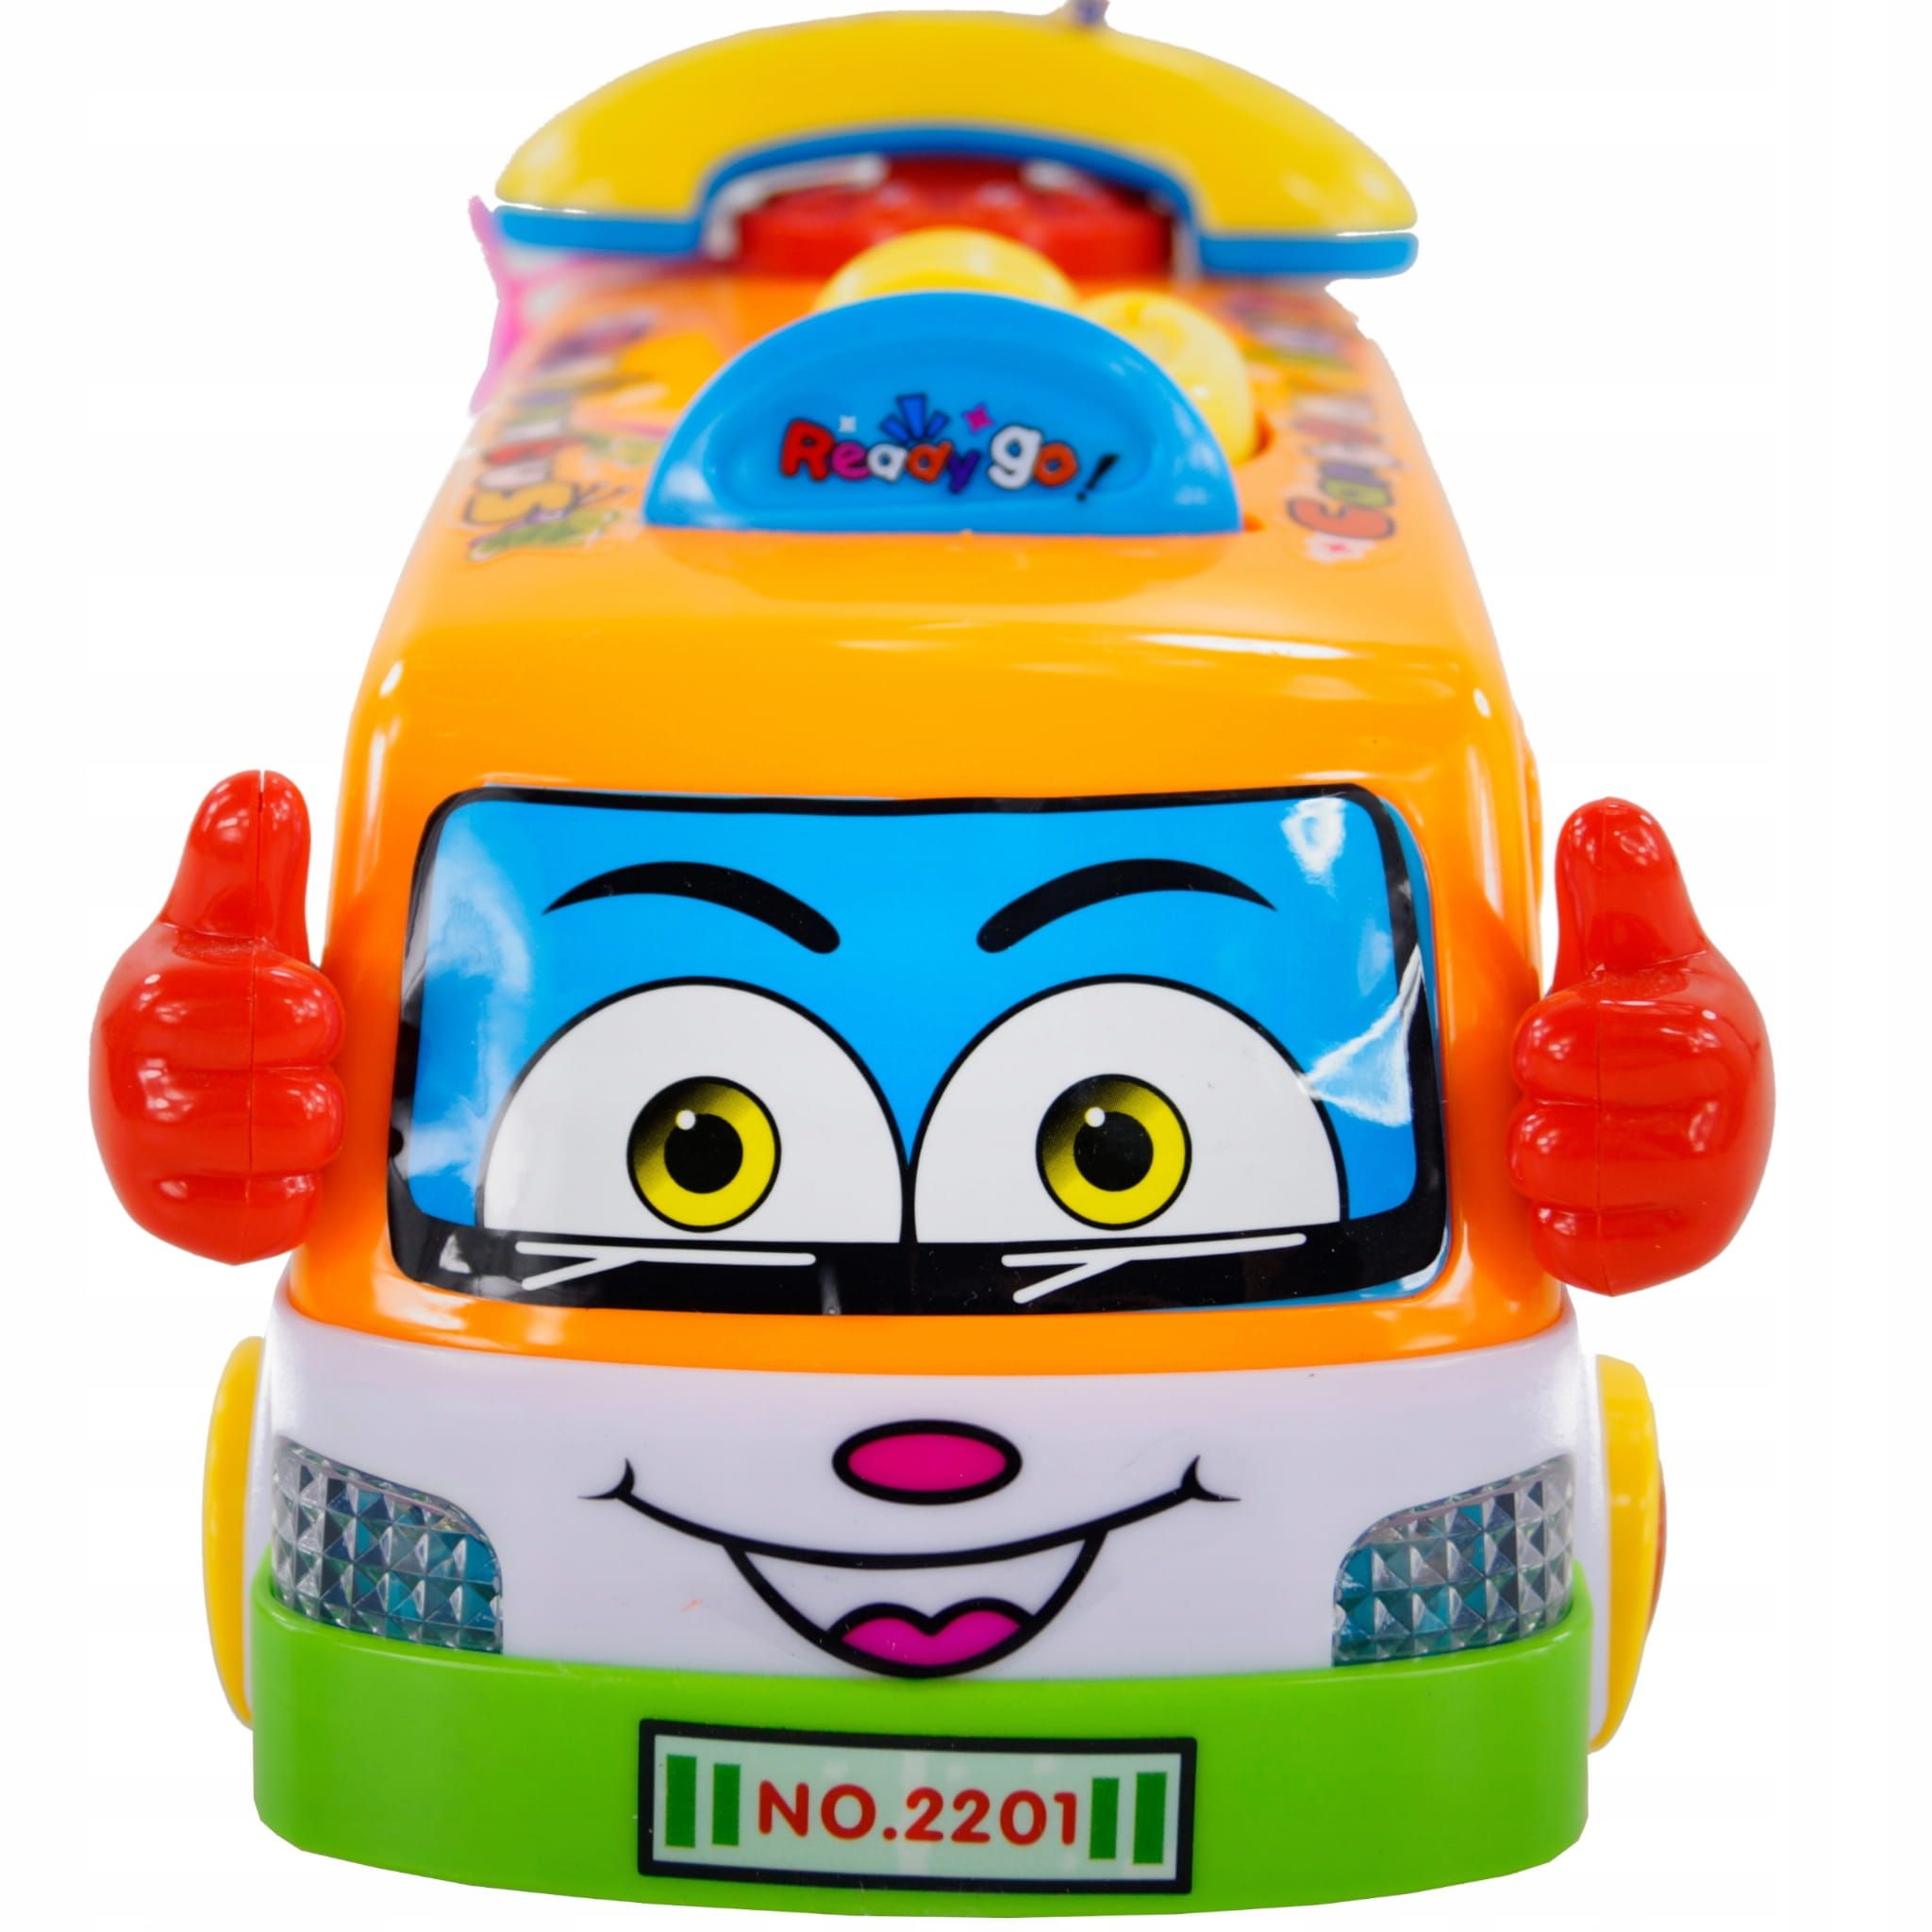 Interaktywny kolorowy autobus zabawki dla rocznego dziecka na roczek